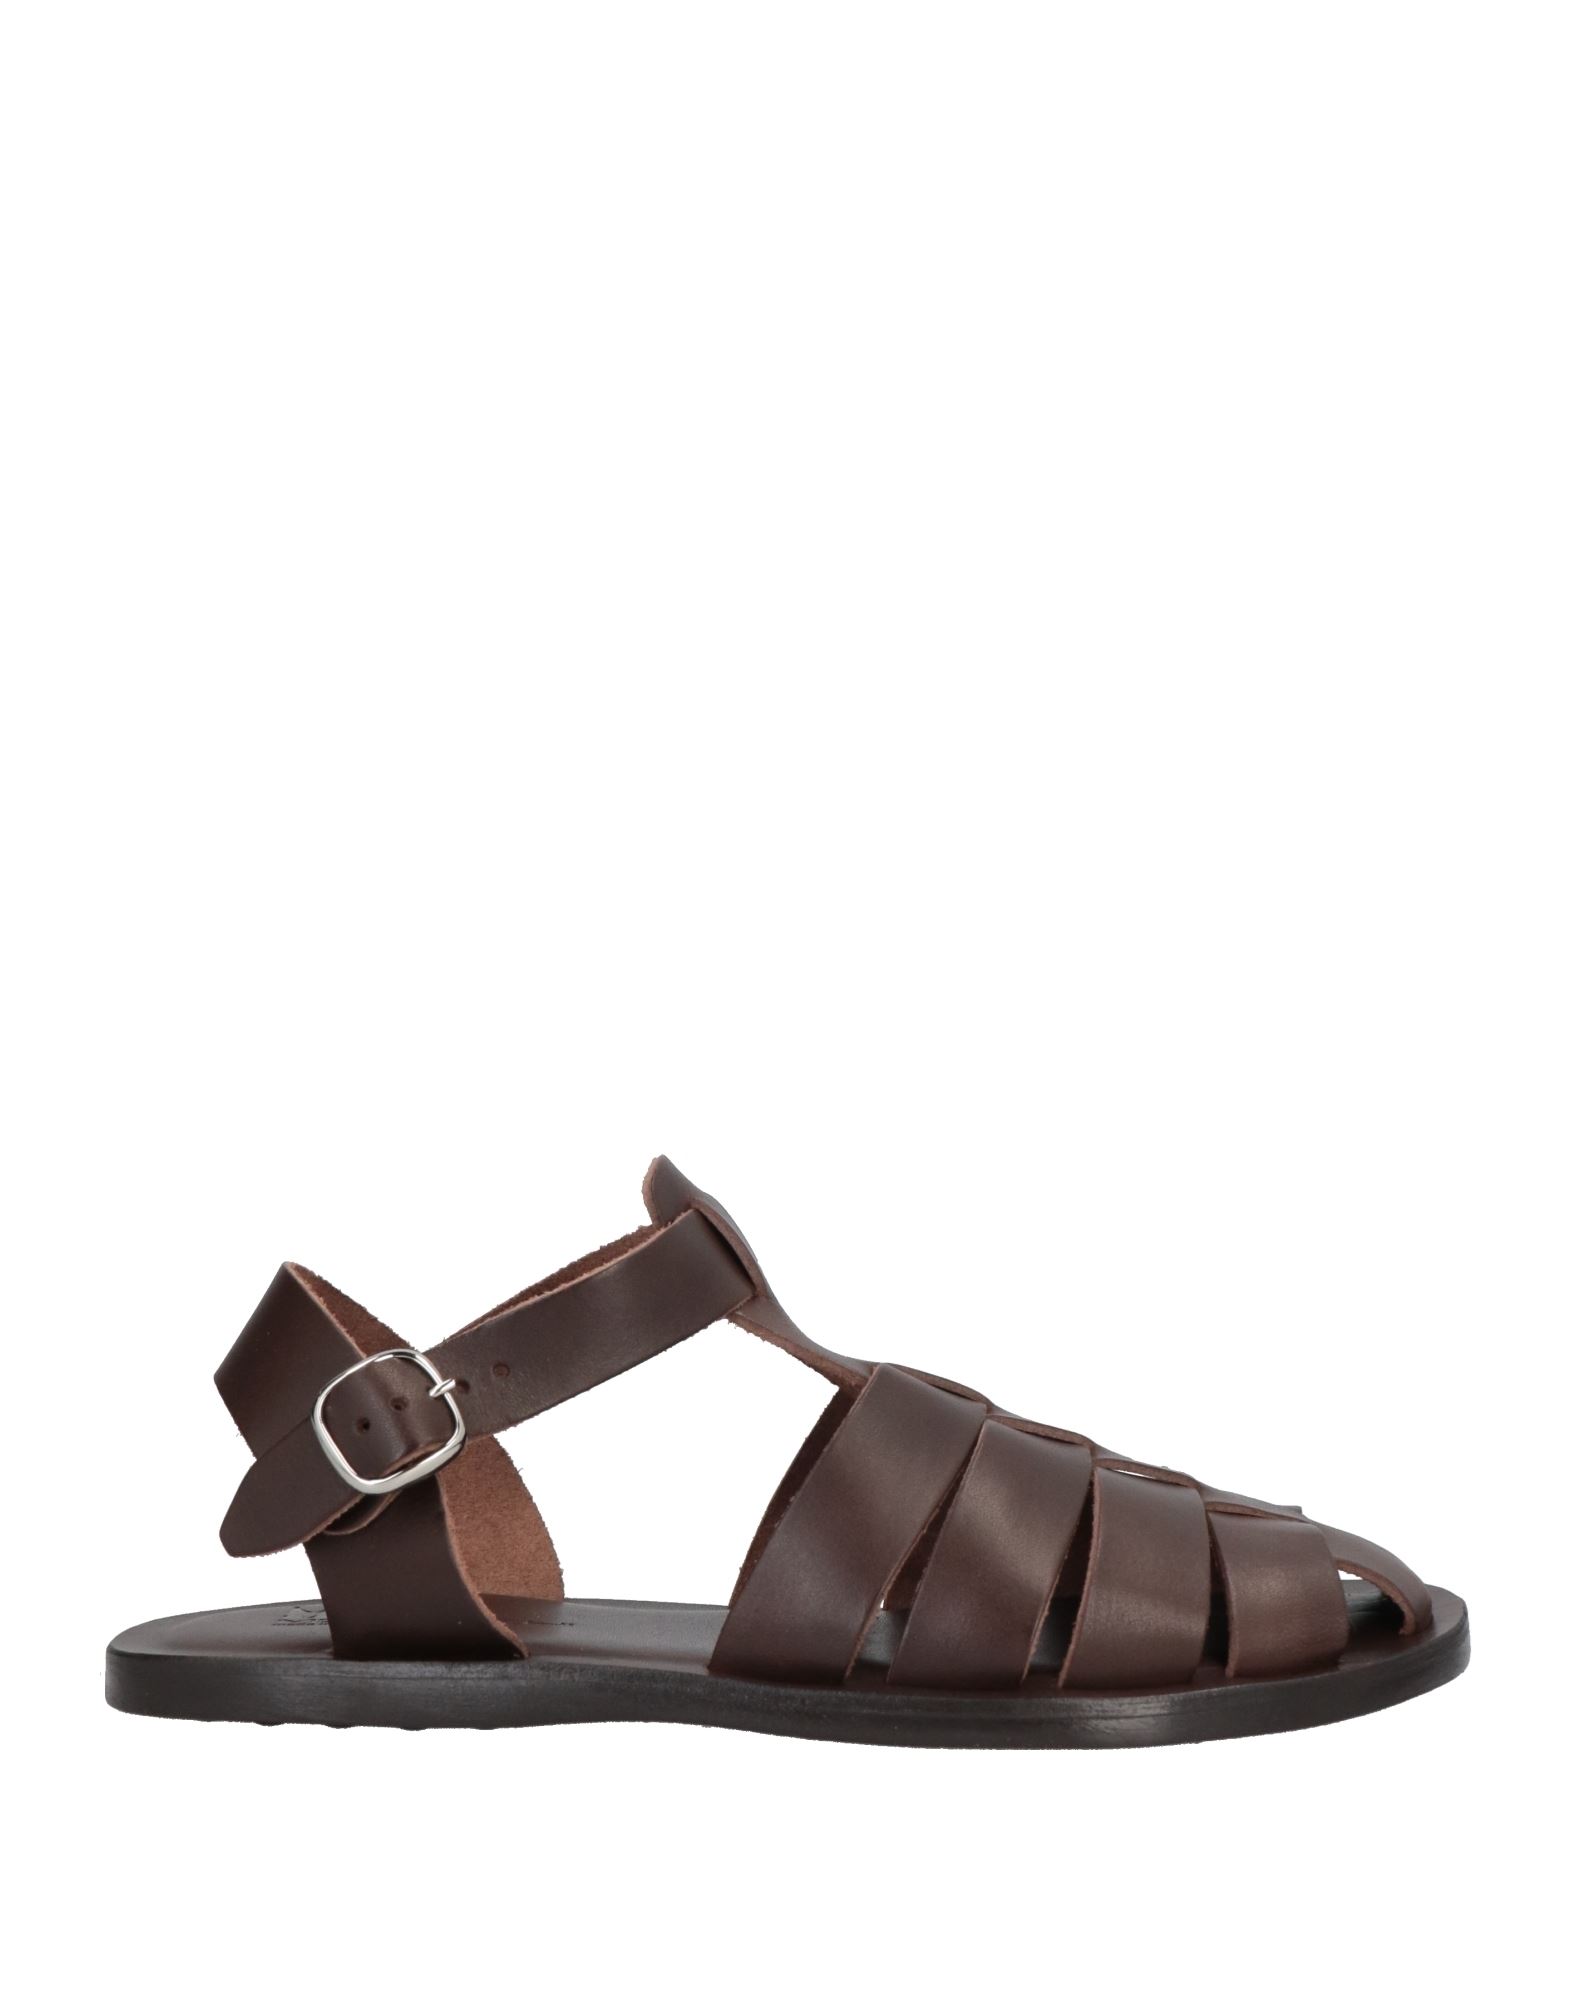 Moreschi Sandals In Brown